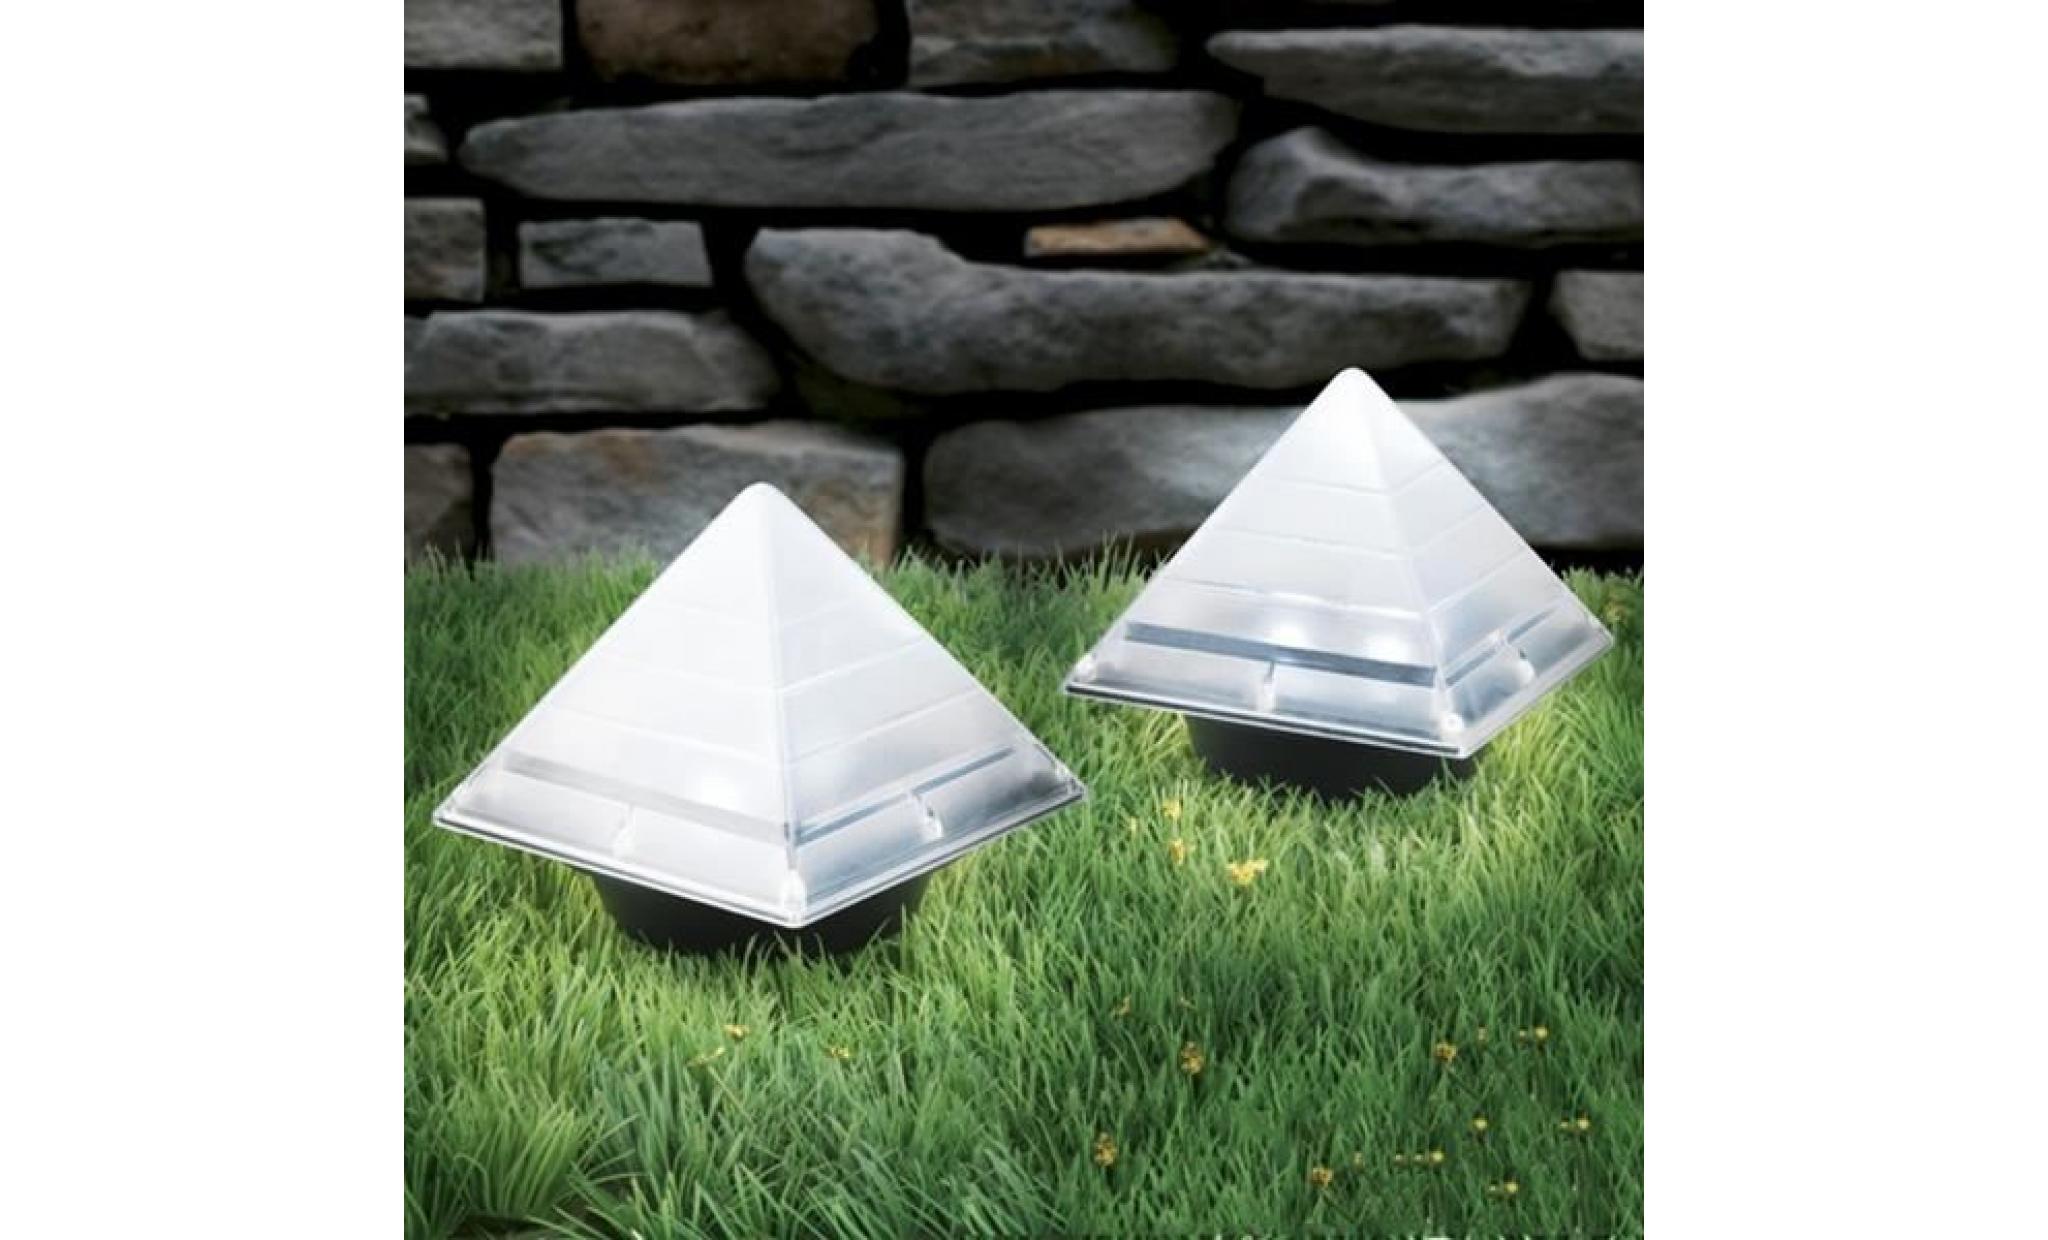 tempsa balise solaire forme pyramide souterraine de jardin pelouse décor pas cher